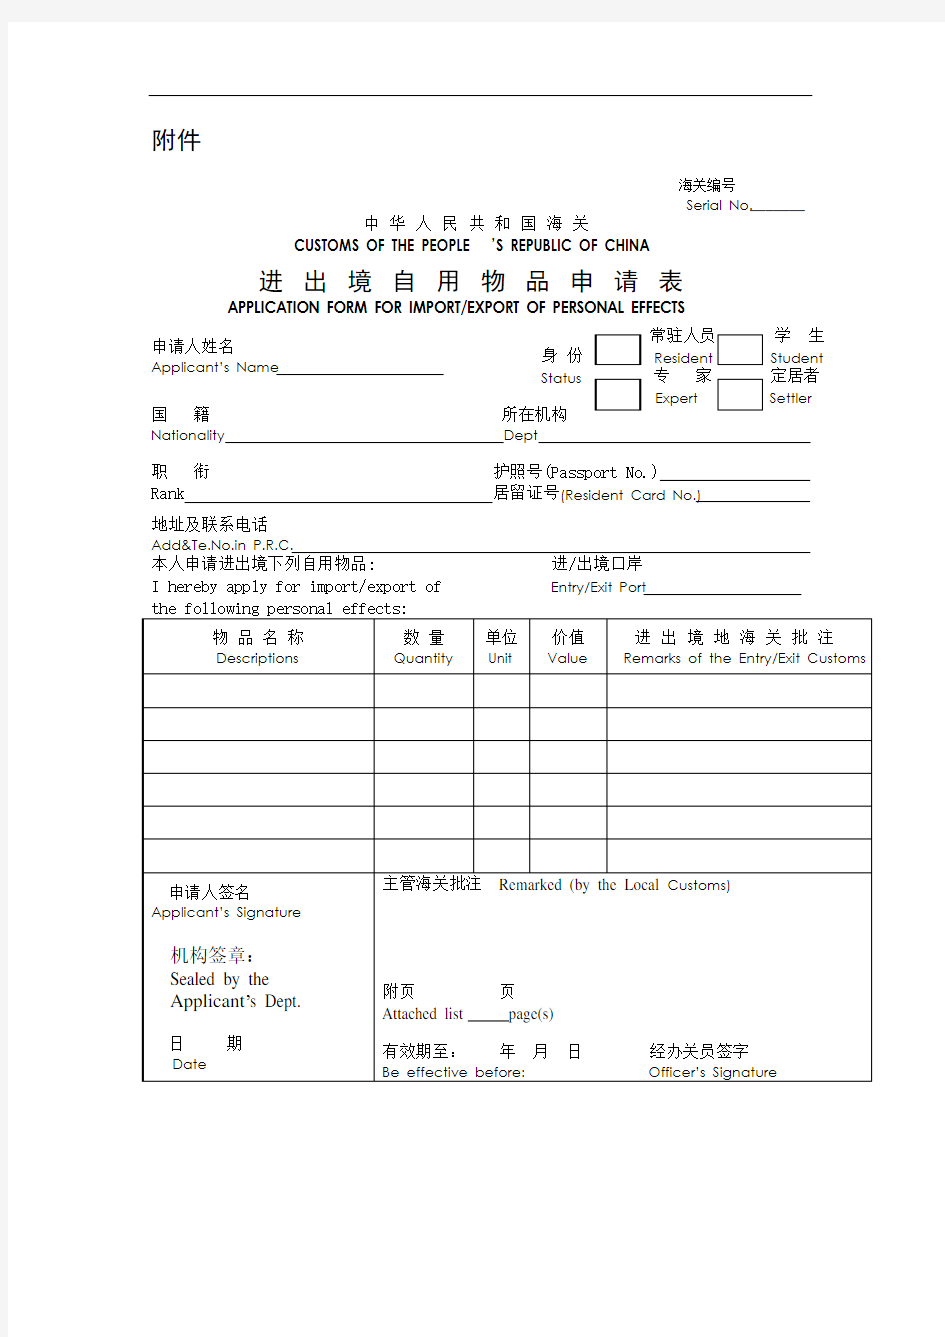 行邮监管 - 中华人民共和国海关进出境自用物品申请表